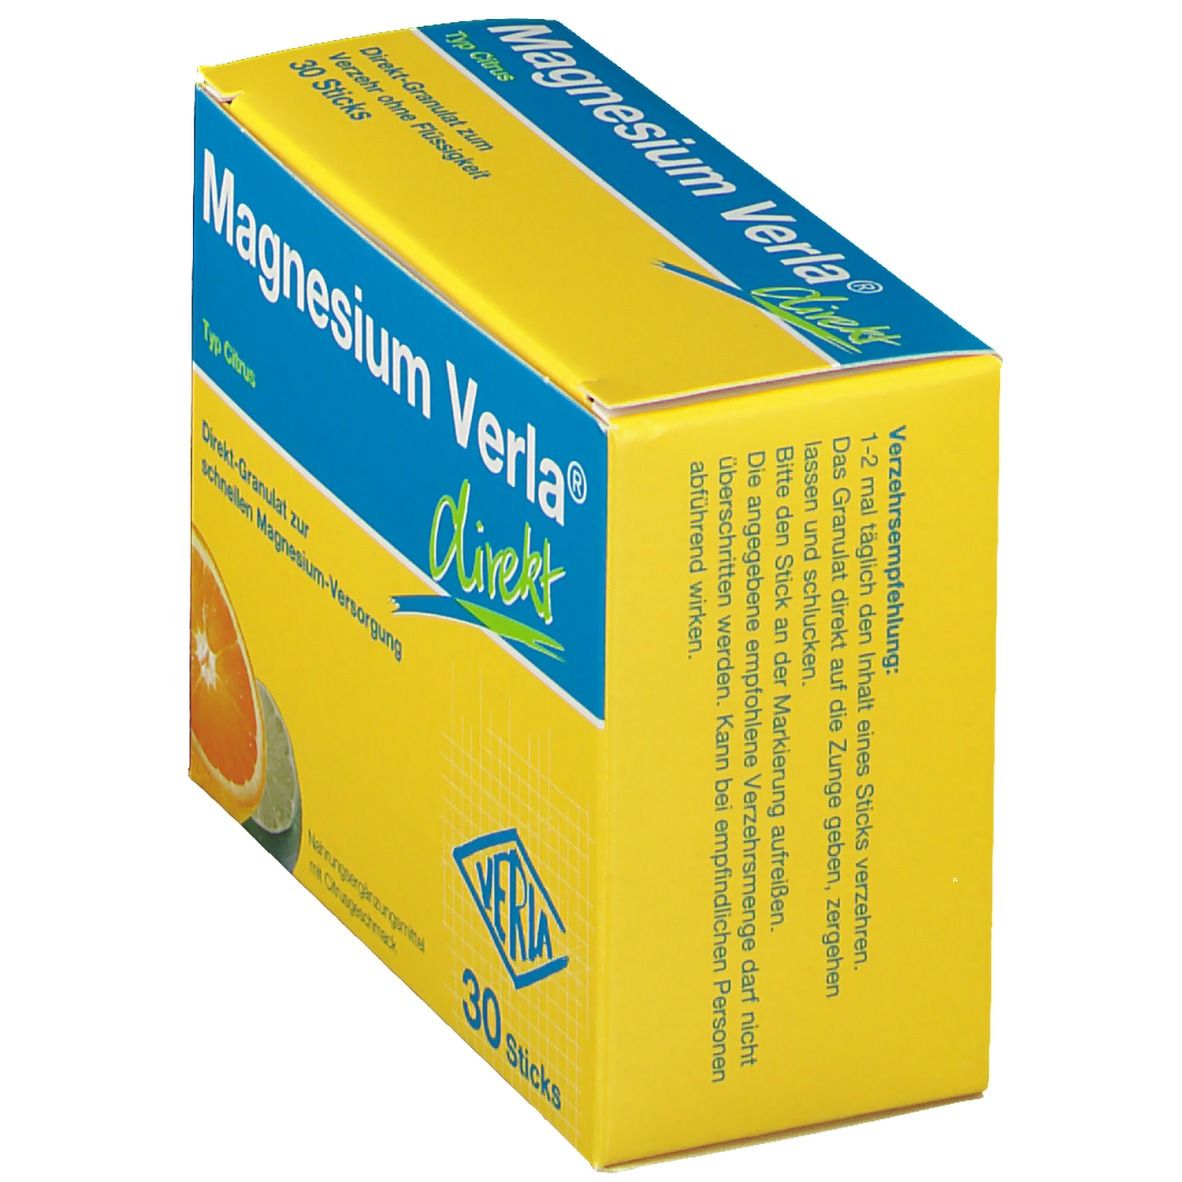 Magnesium Verla® Citrus